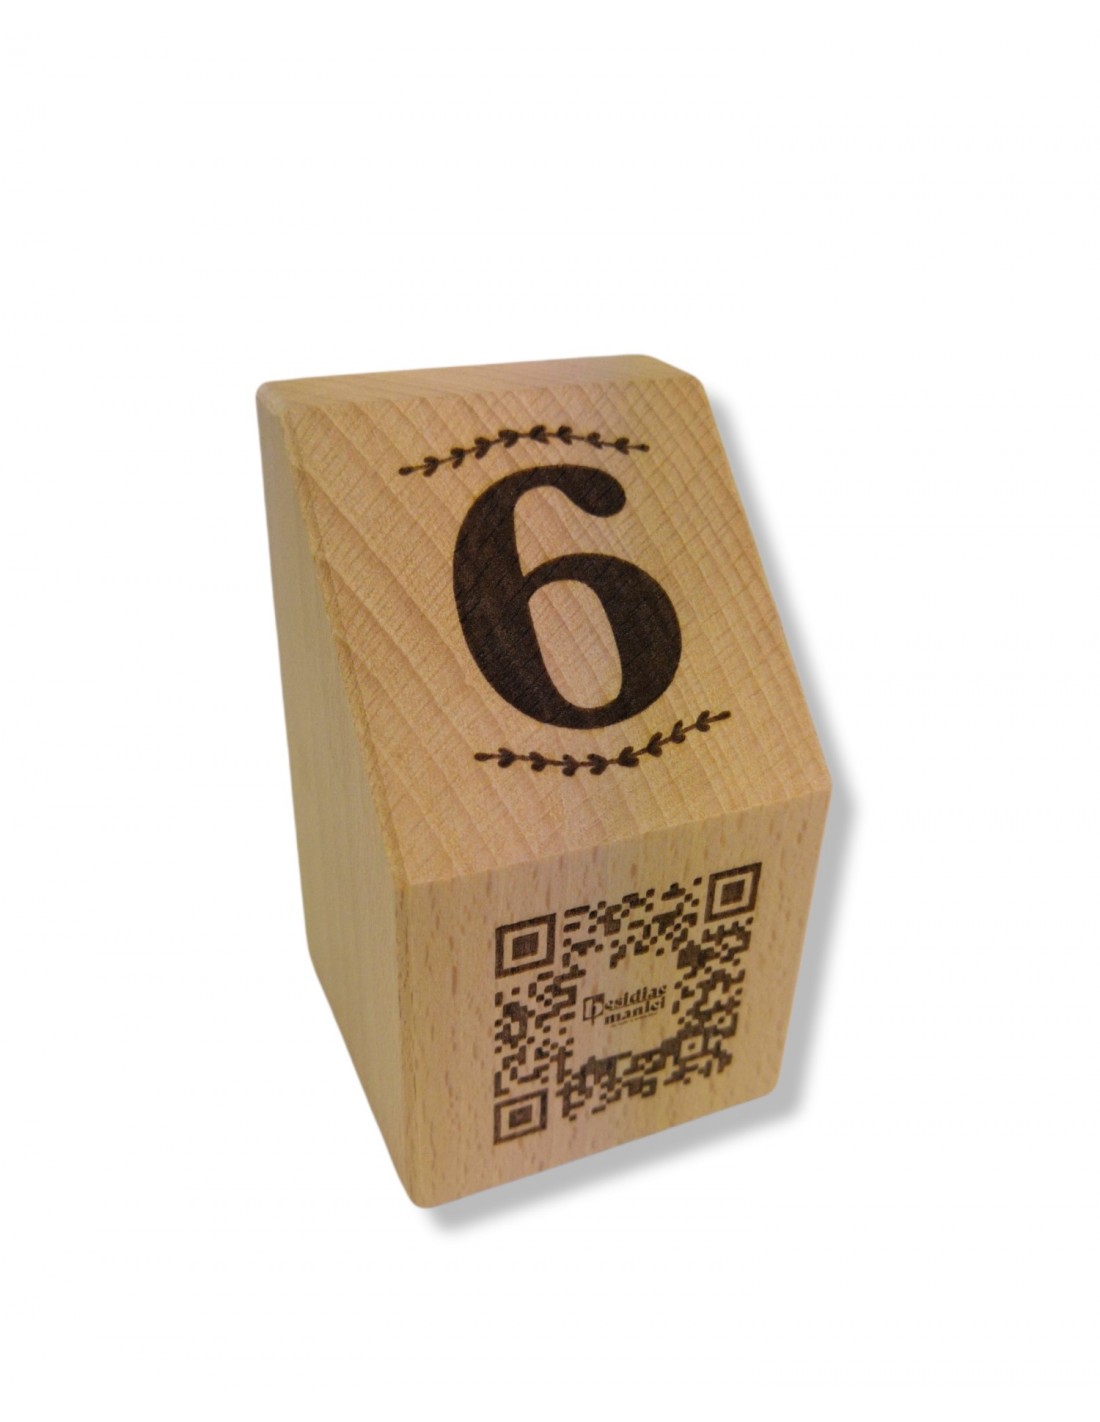 Cubo qr code legno personalizzato - CreAdele - Selvino (BG)